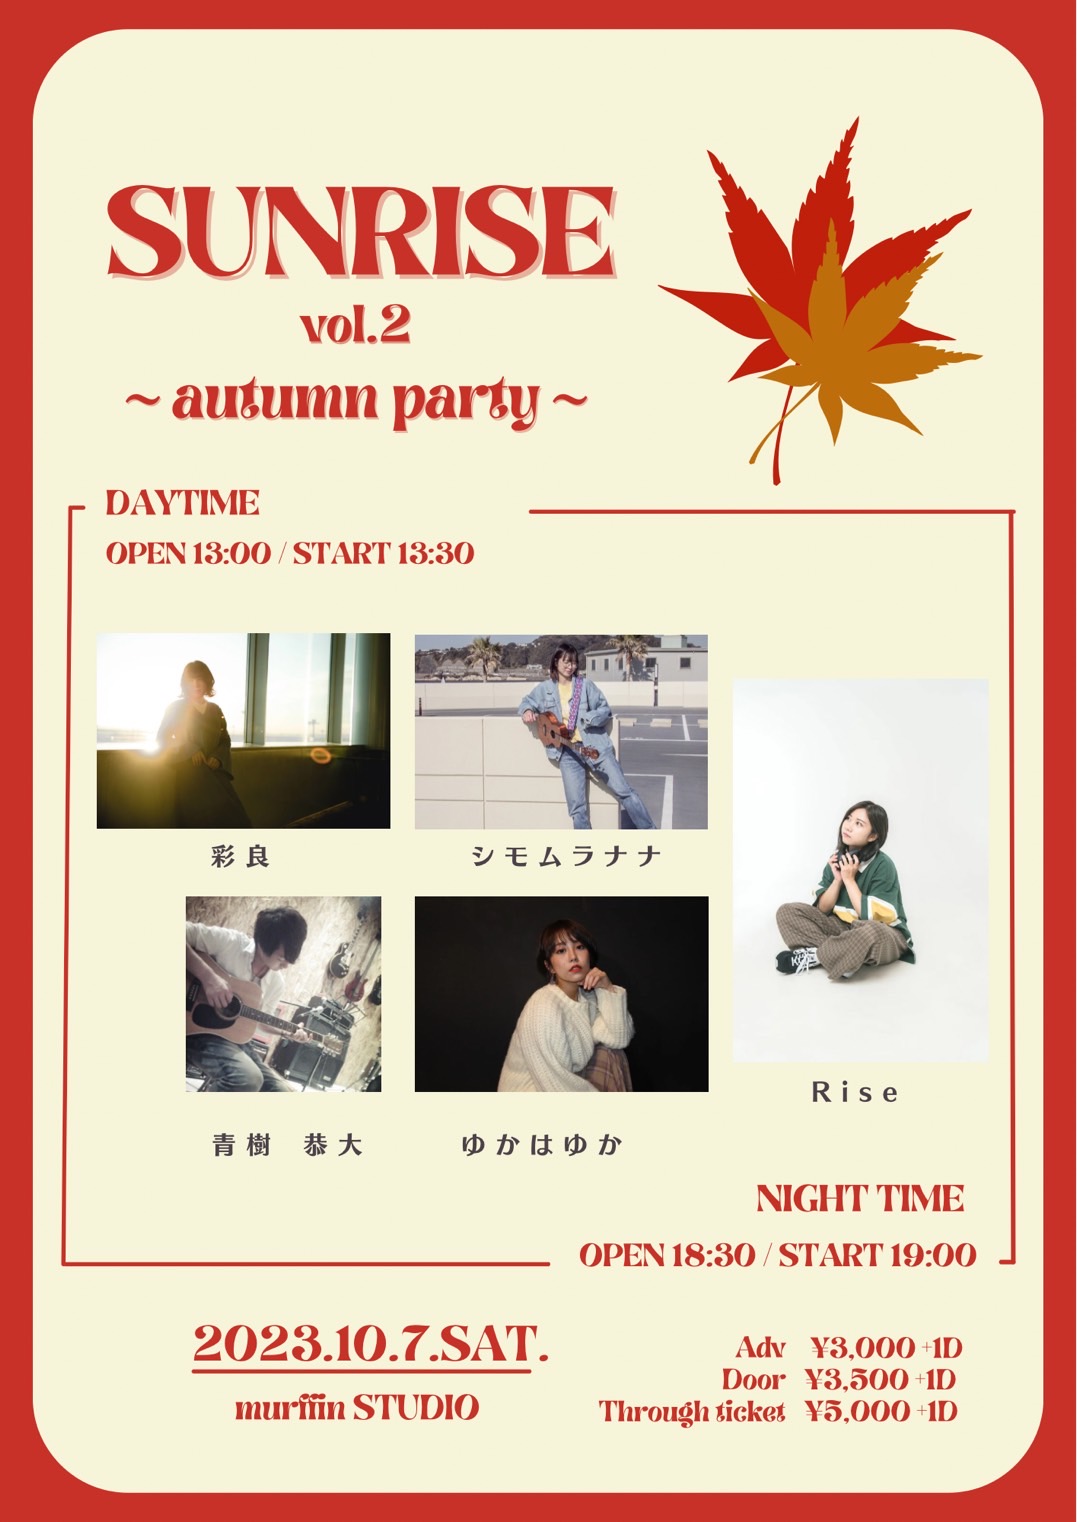 ※会場要確認※ 『Sunrise vol.2 ~autumn party~』(2部制)